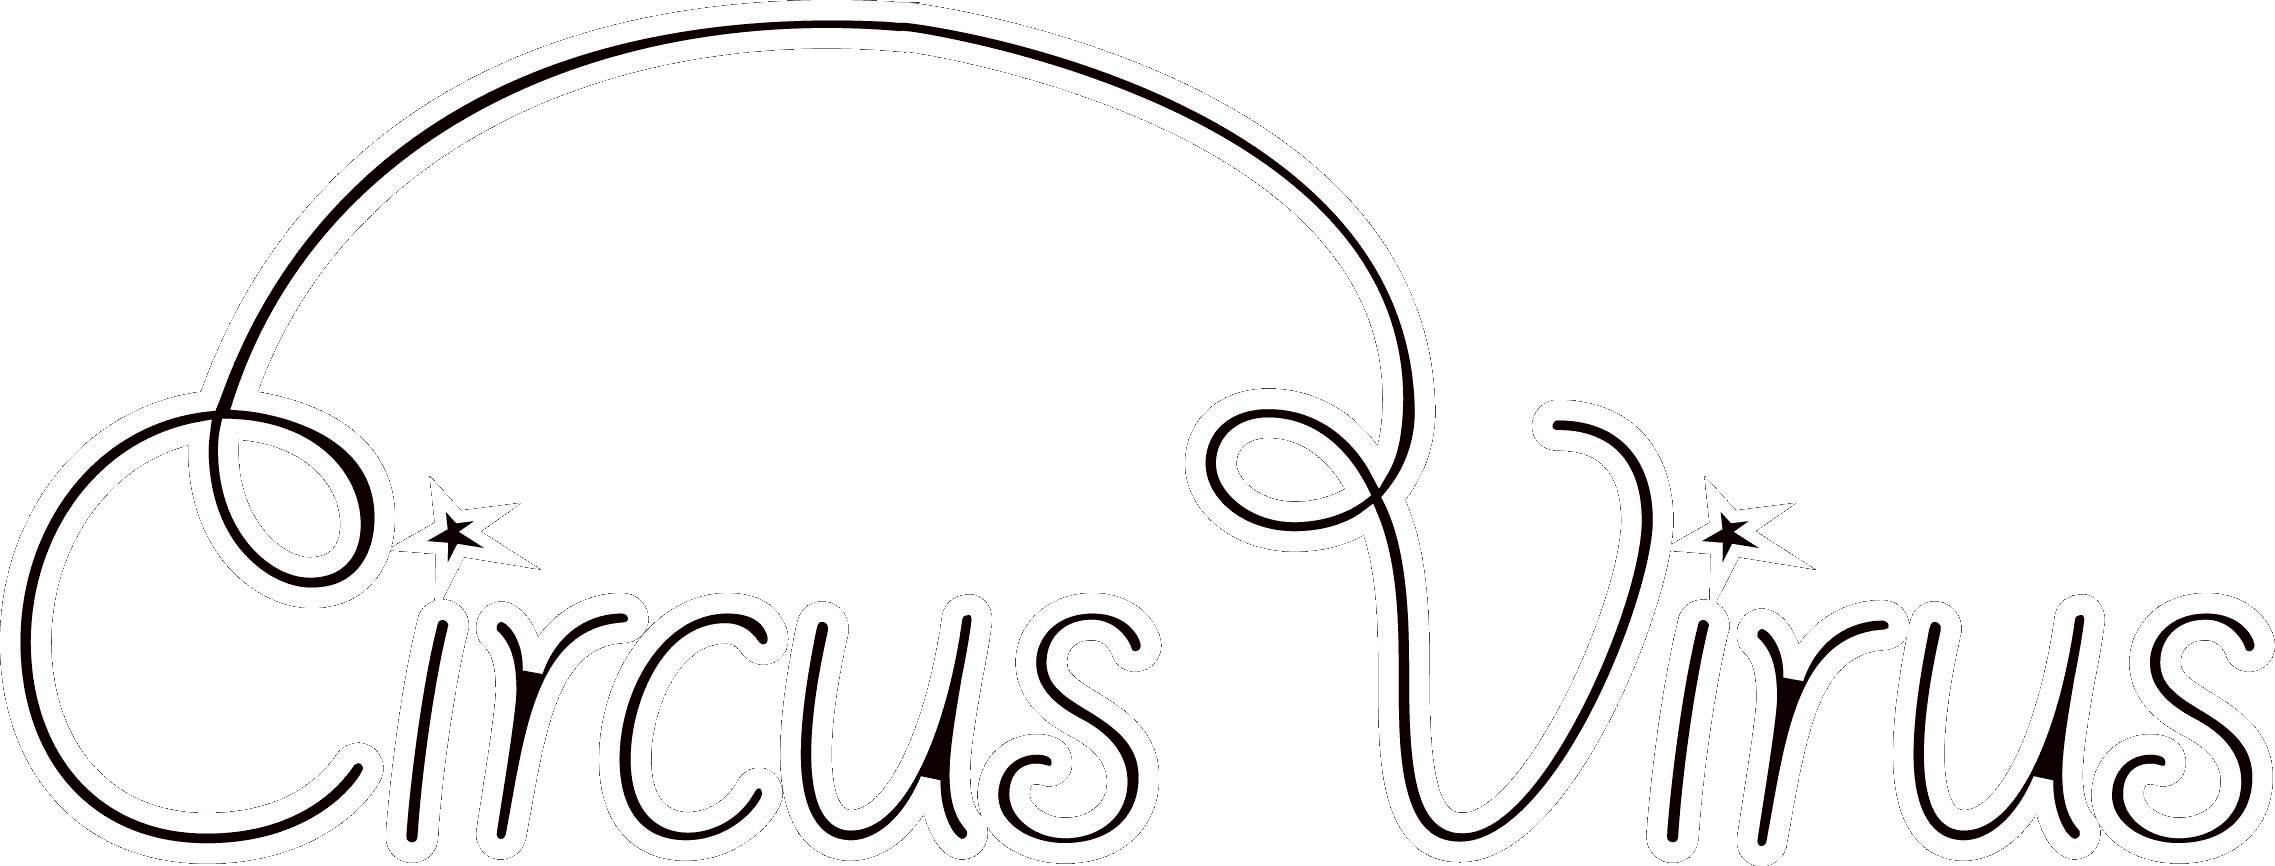 Circus Virus